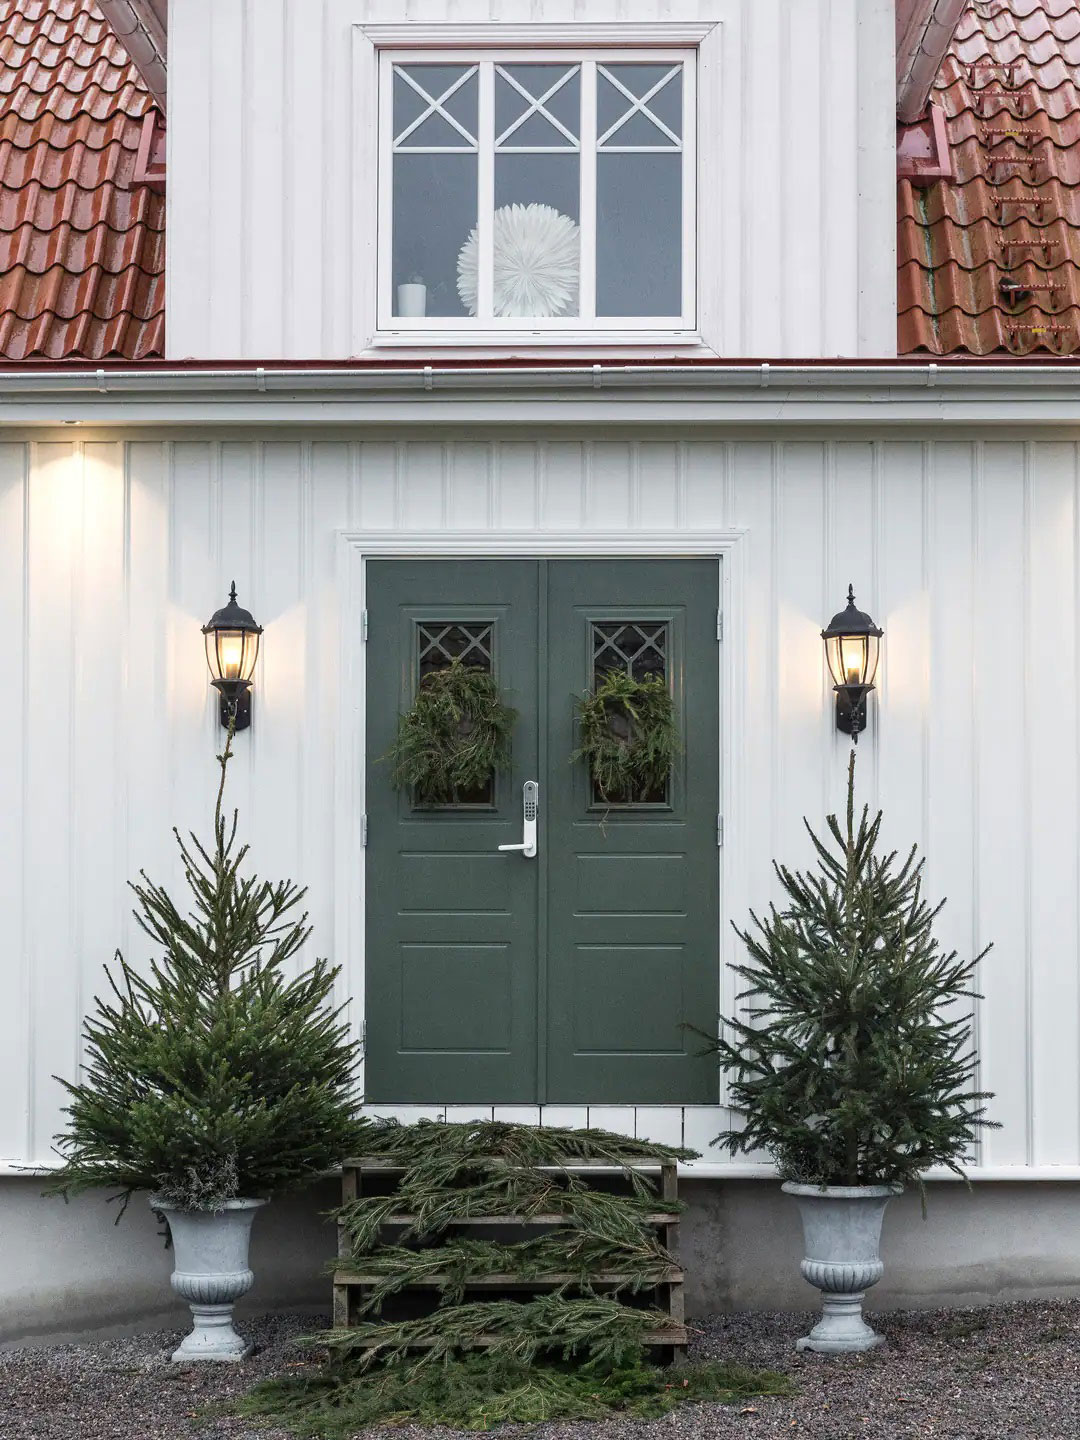 Белый шведский домик, украшенный к зимним праздникам